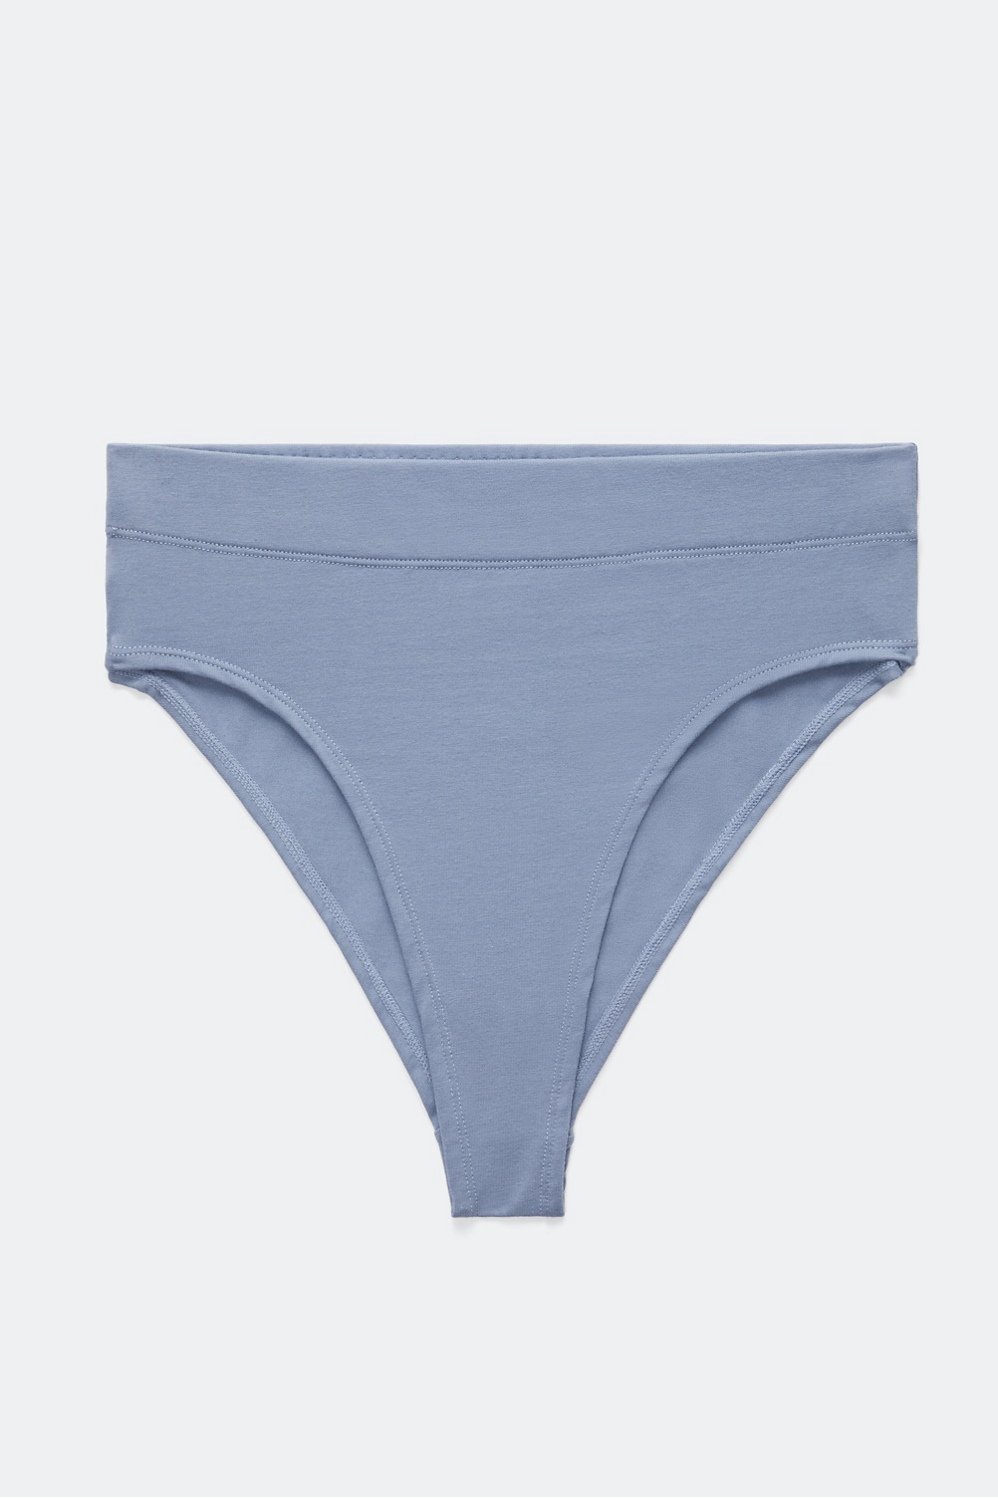 Lycra Cotton Plain Lux Venus Light Blue Underwear, Handwash at